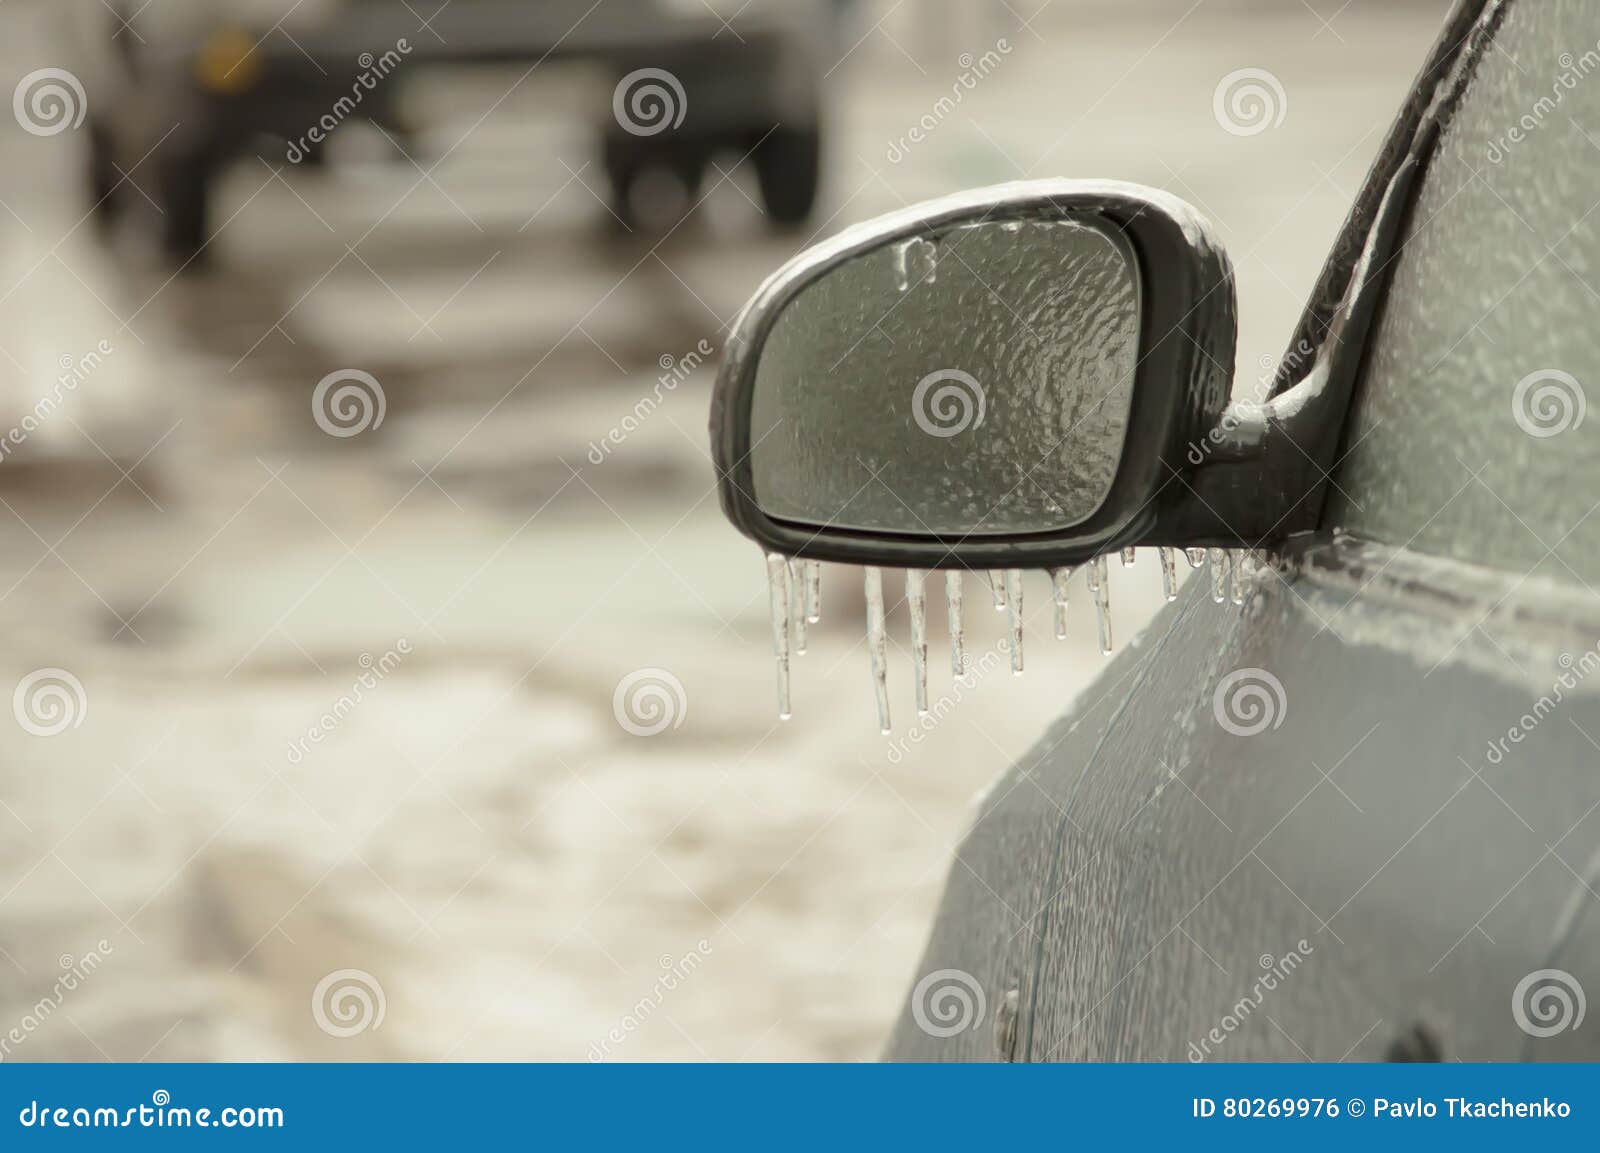 freezing rain ice coated car.